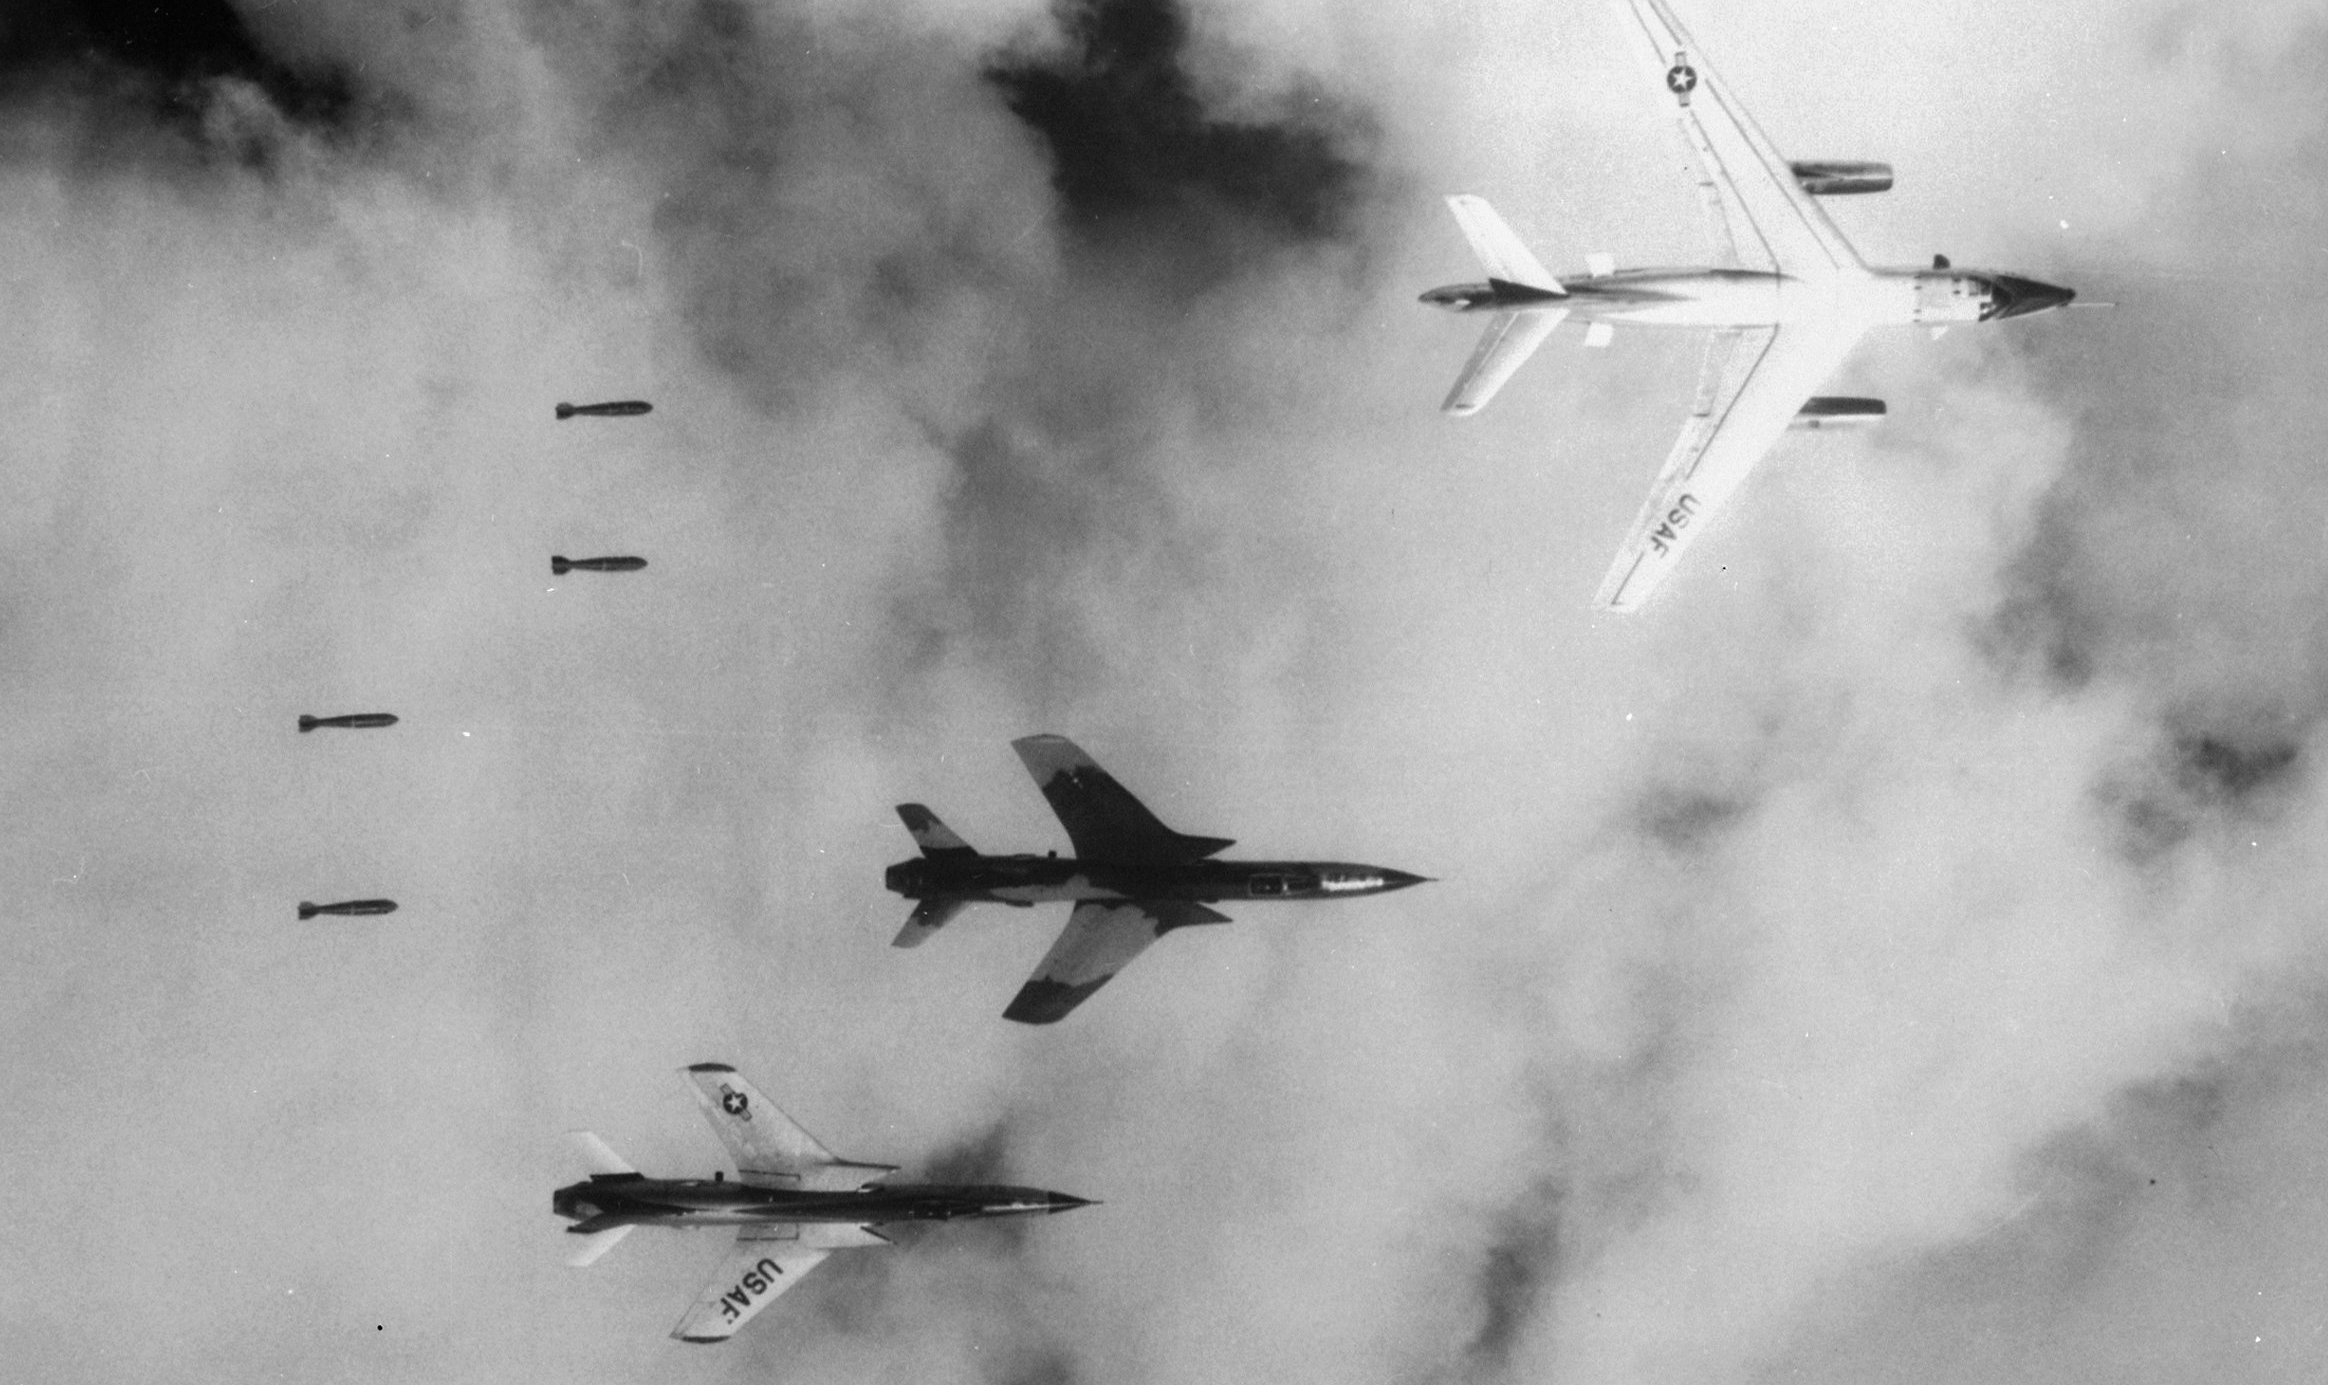 Entre 1965 e 1975, os EUA lançou sobre as nações da Indochina uma tonelagem total de bombas superior à lançada pelos Aliados durante a Segunda Guerra